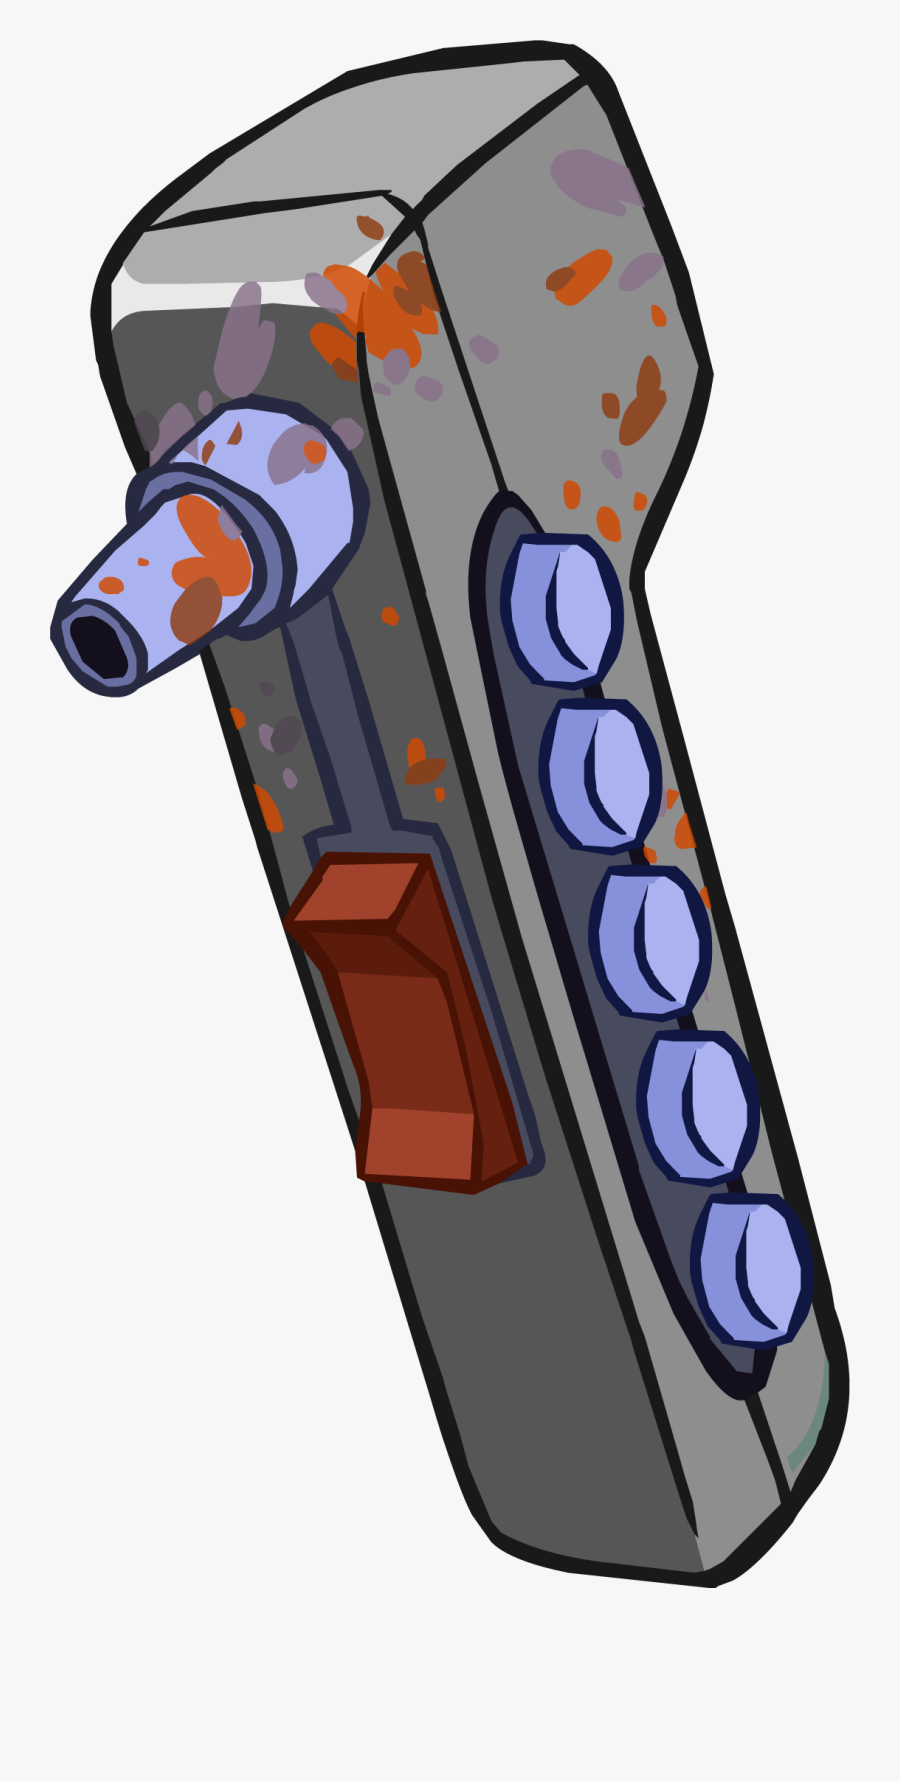 Sabine S Spray Club - Club Penguin Gun, Transparent Clipart